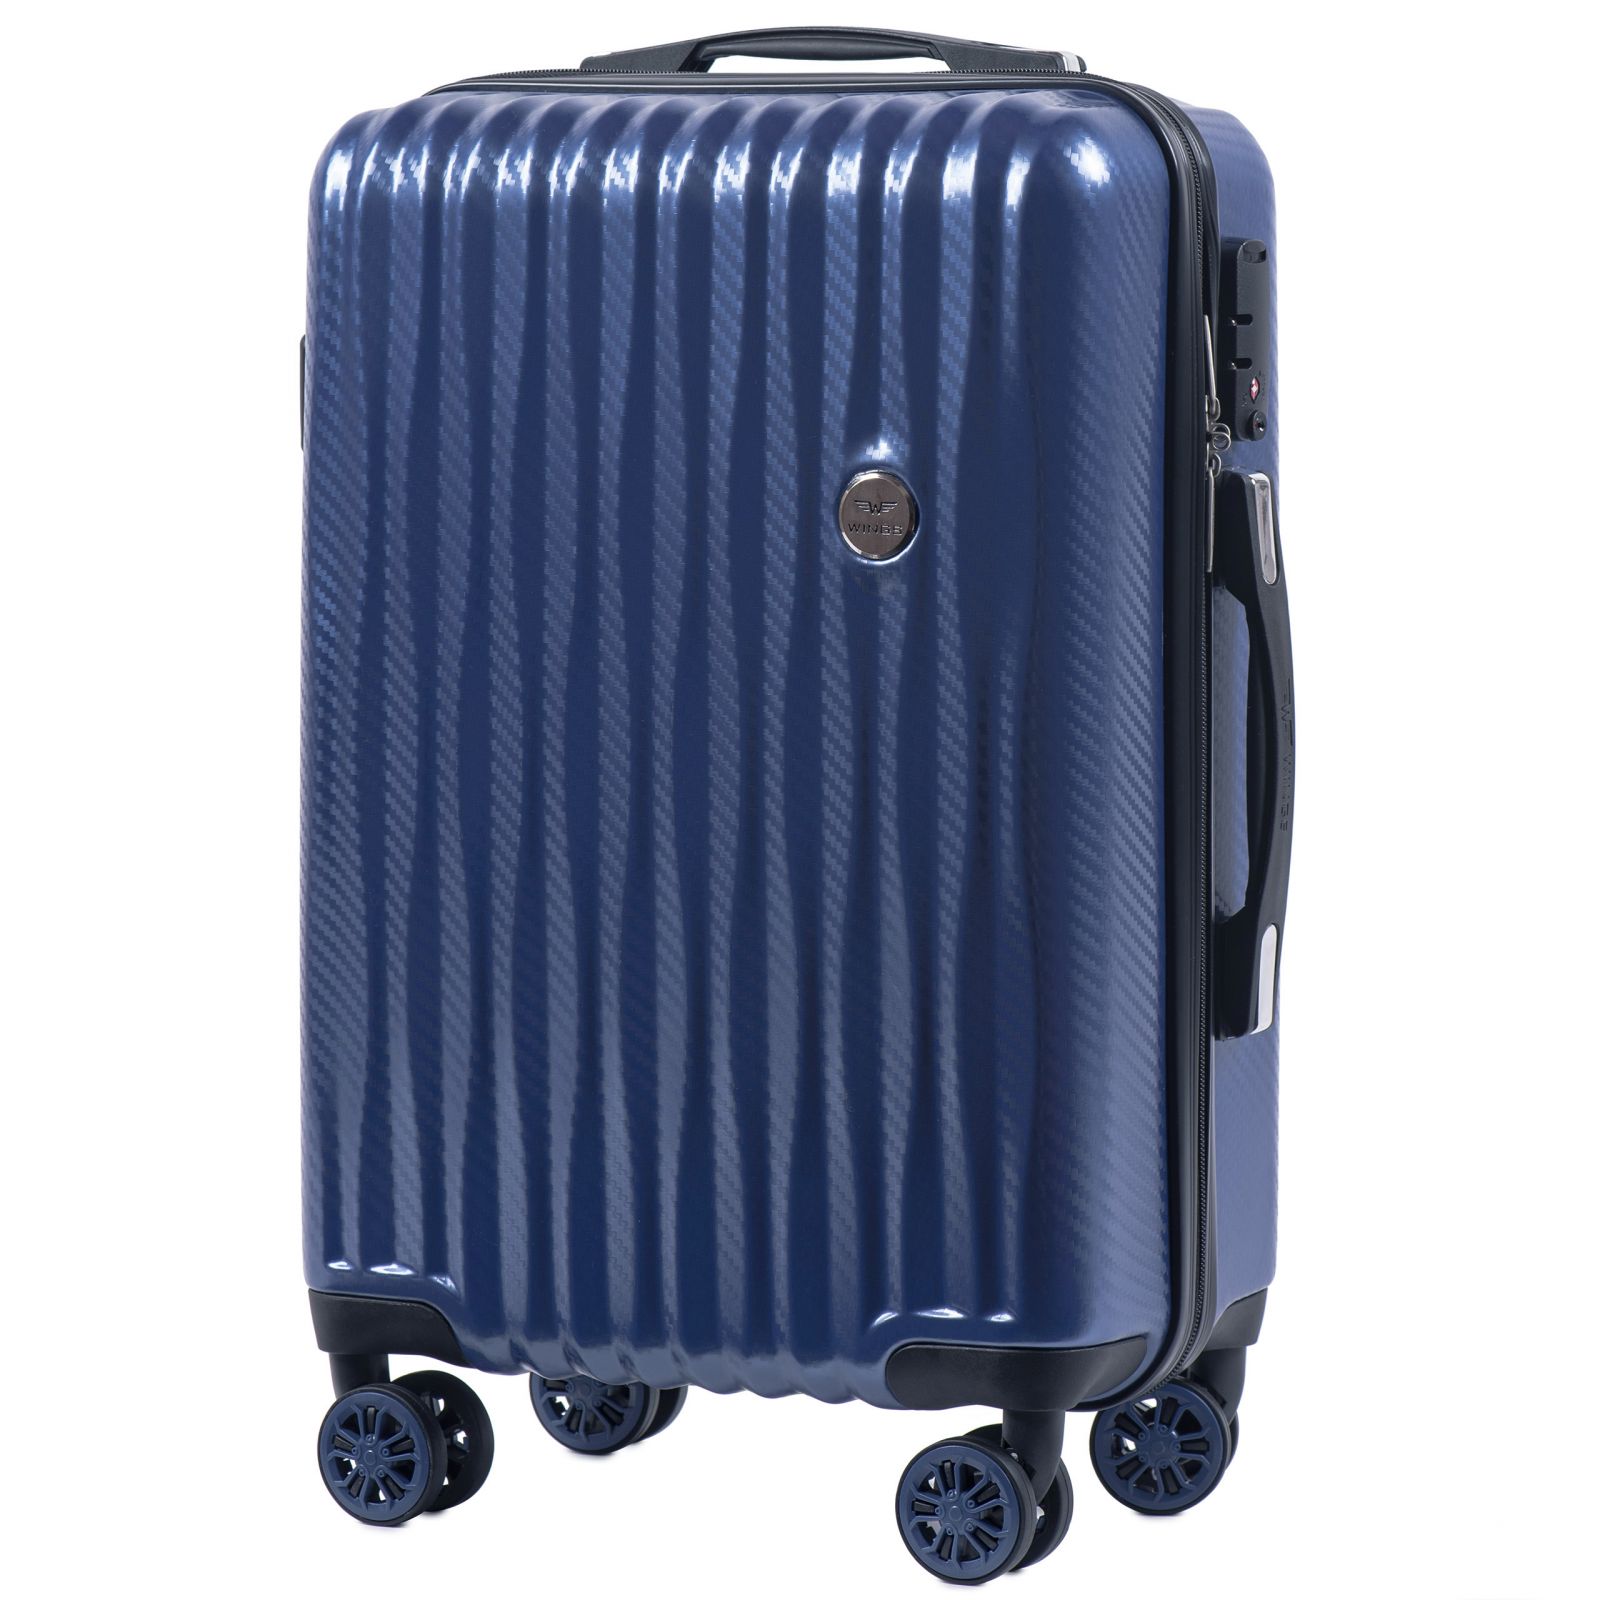 Cestovní kufr WINGS ABS POLIPROPYLEN BLUE malý S